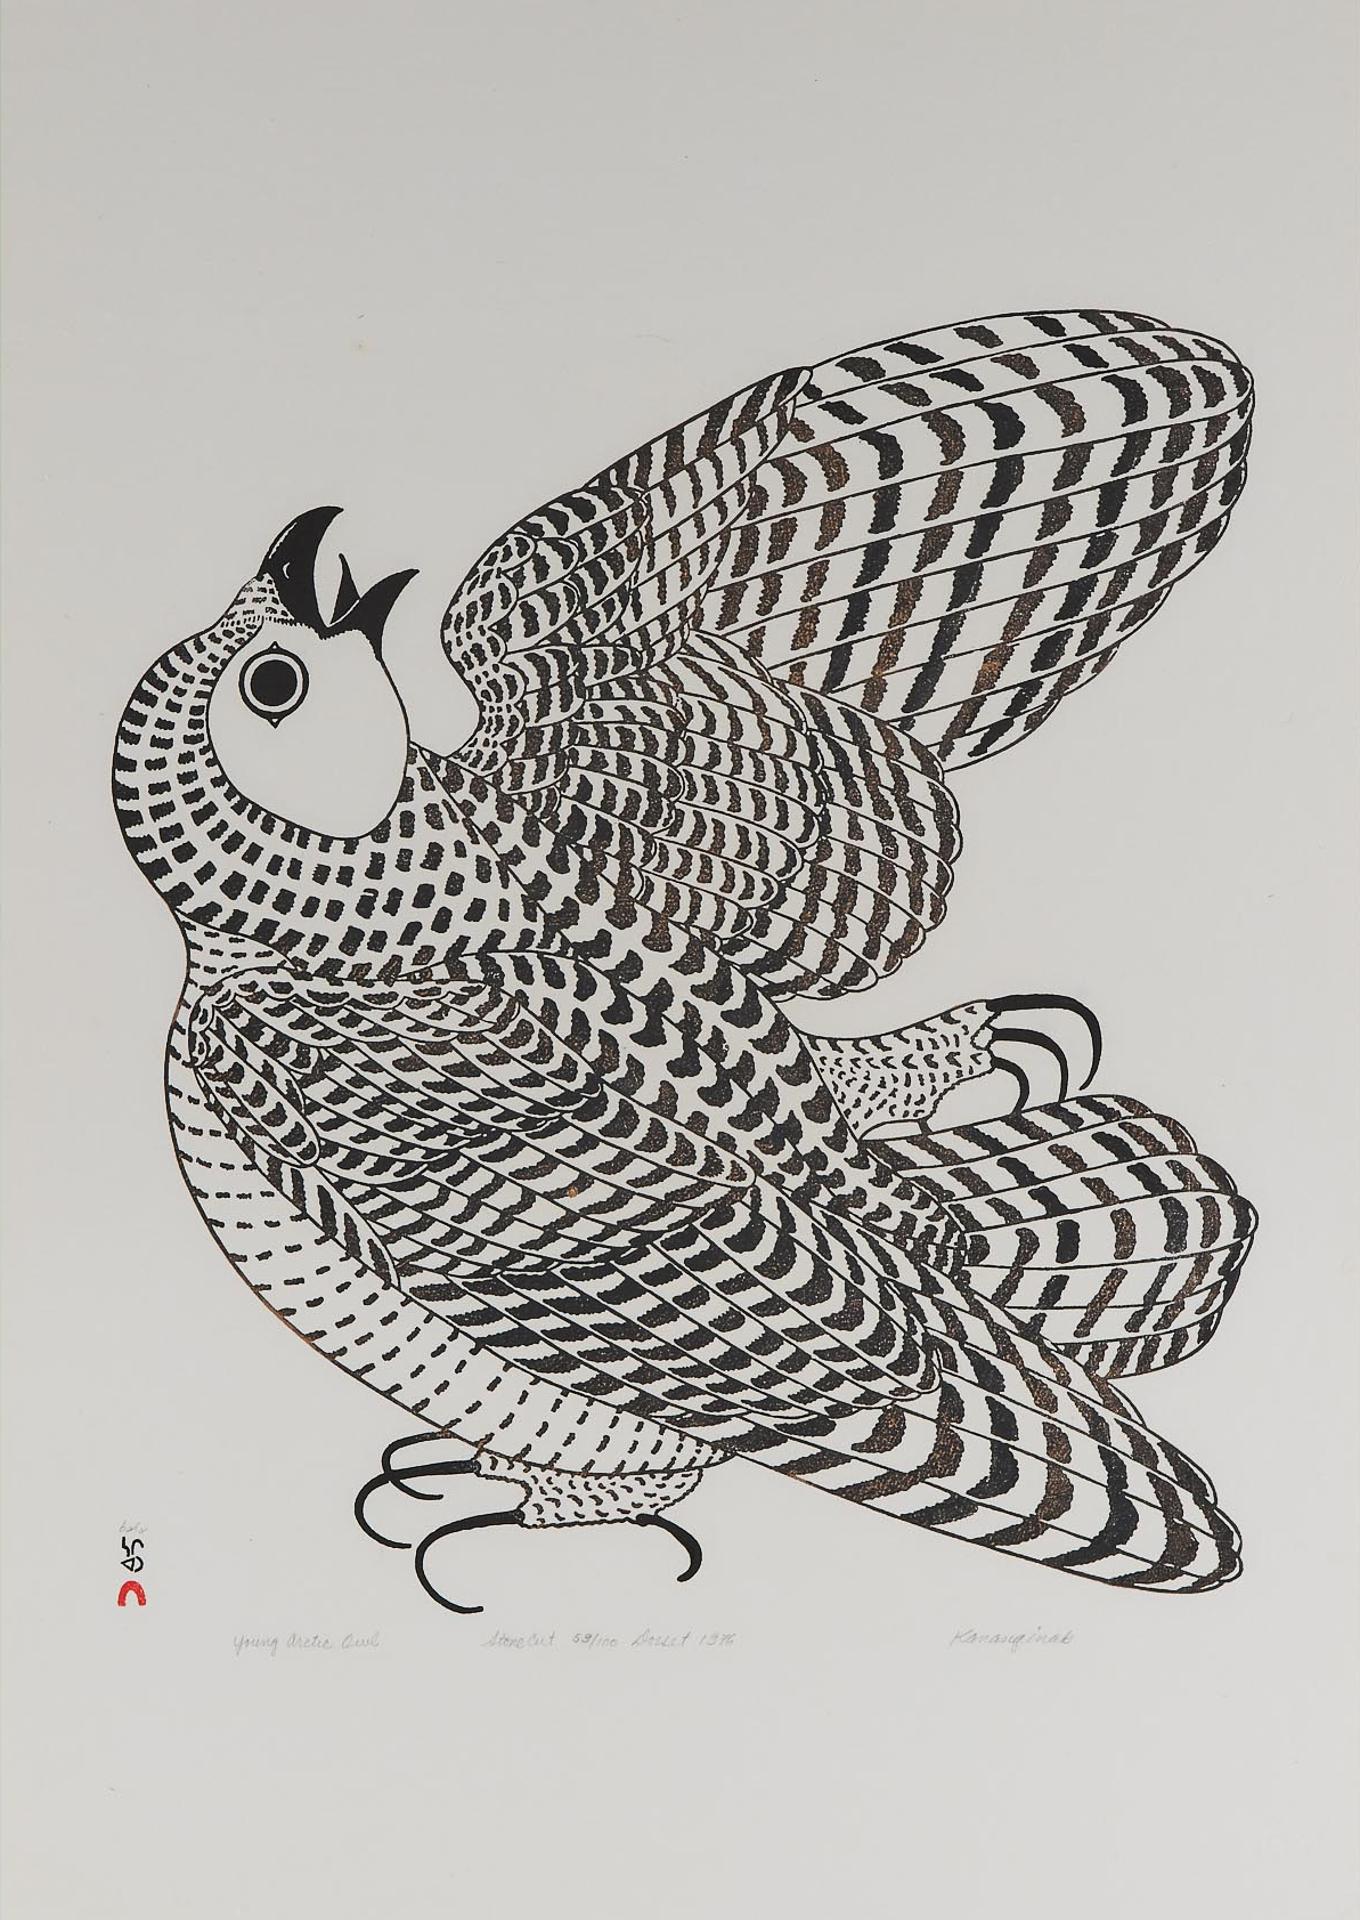 Kananginak Pootoogook (1935-2010) - Young Arctic Owl, 1976